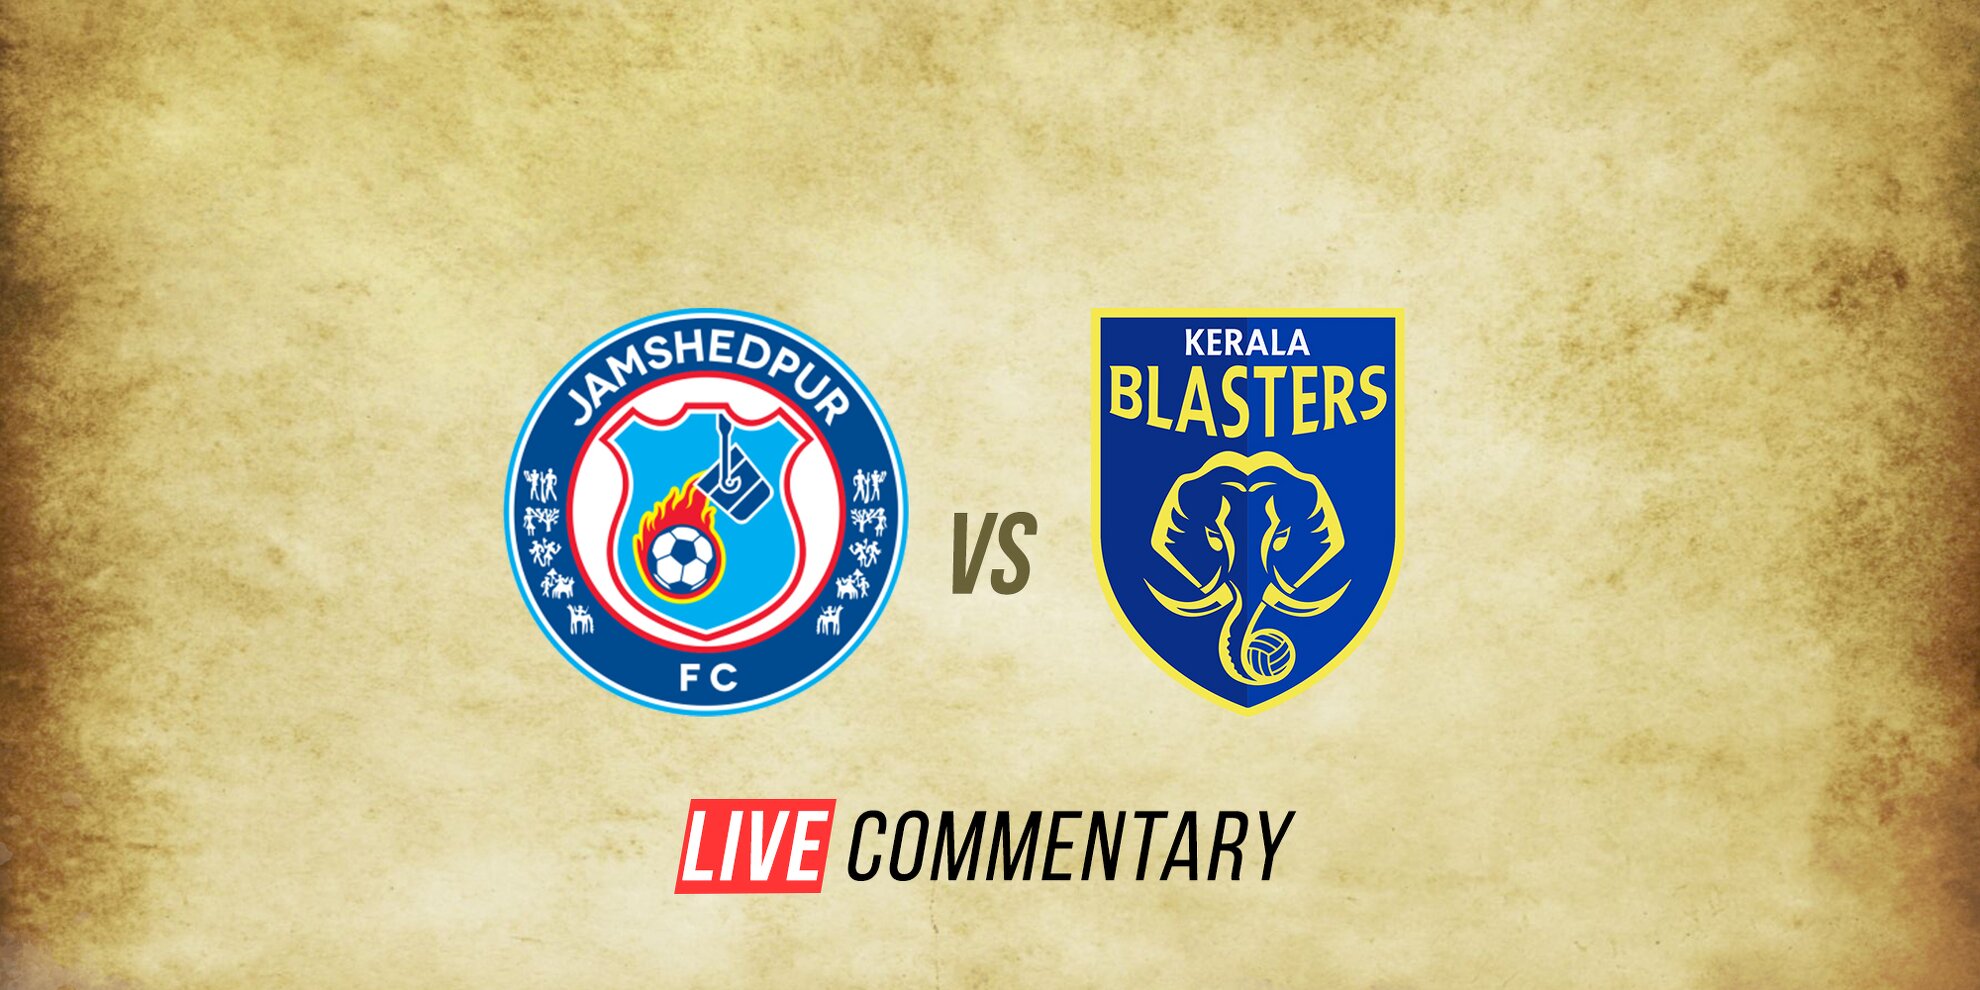 Jamshedpur FC vs Kerala Blasters Live Comm